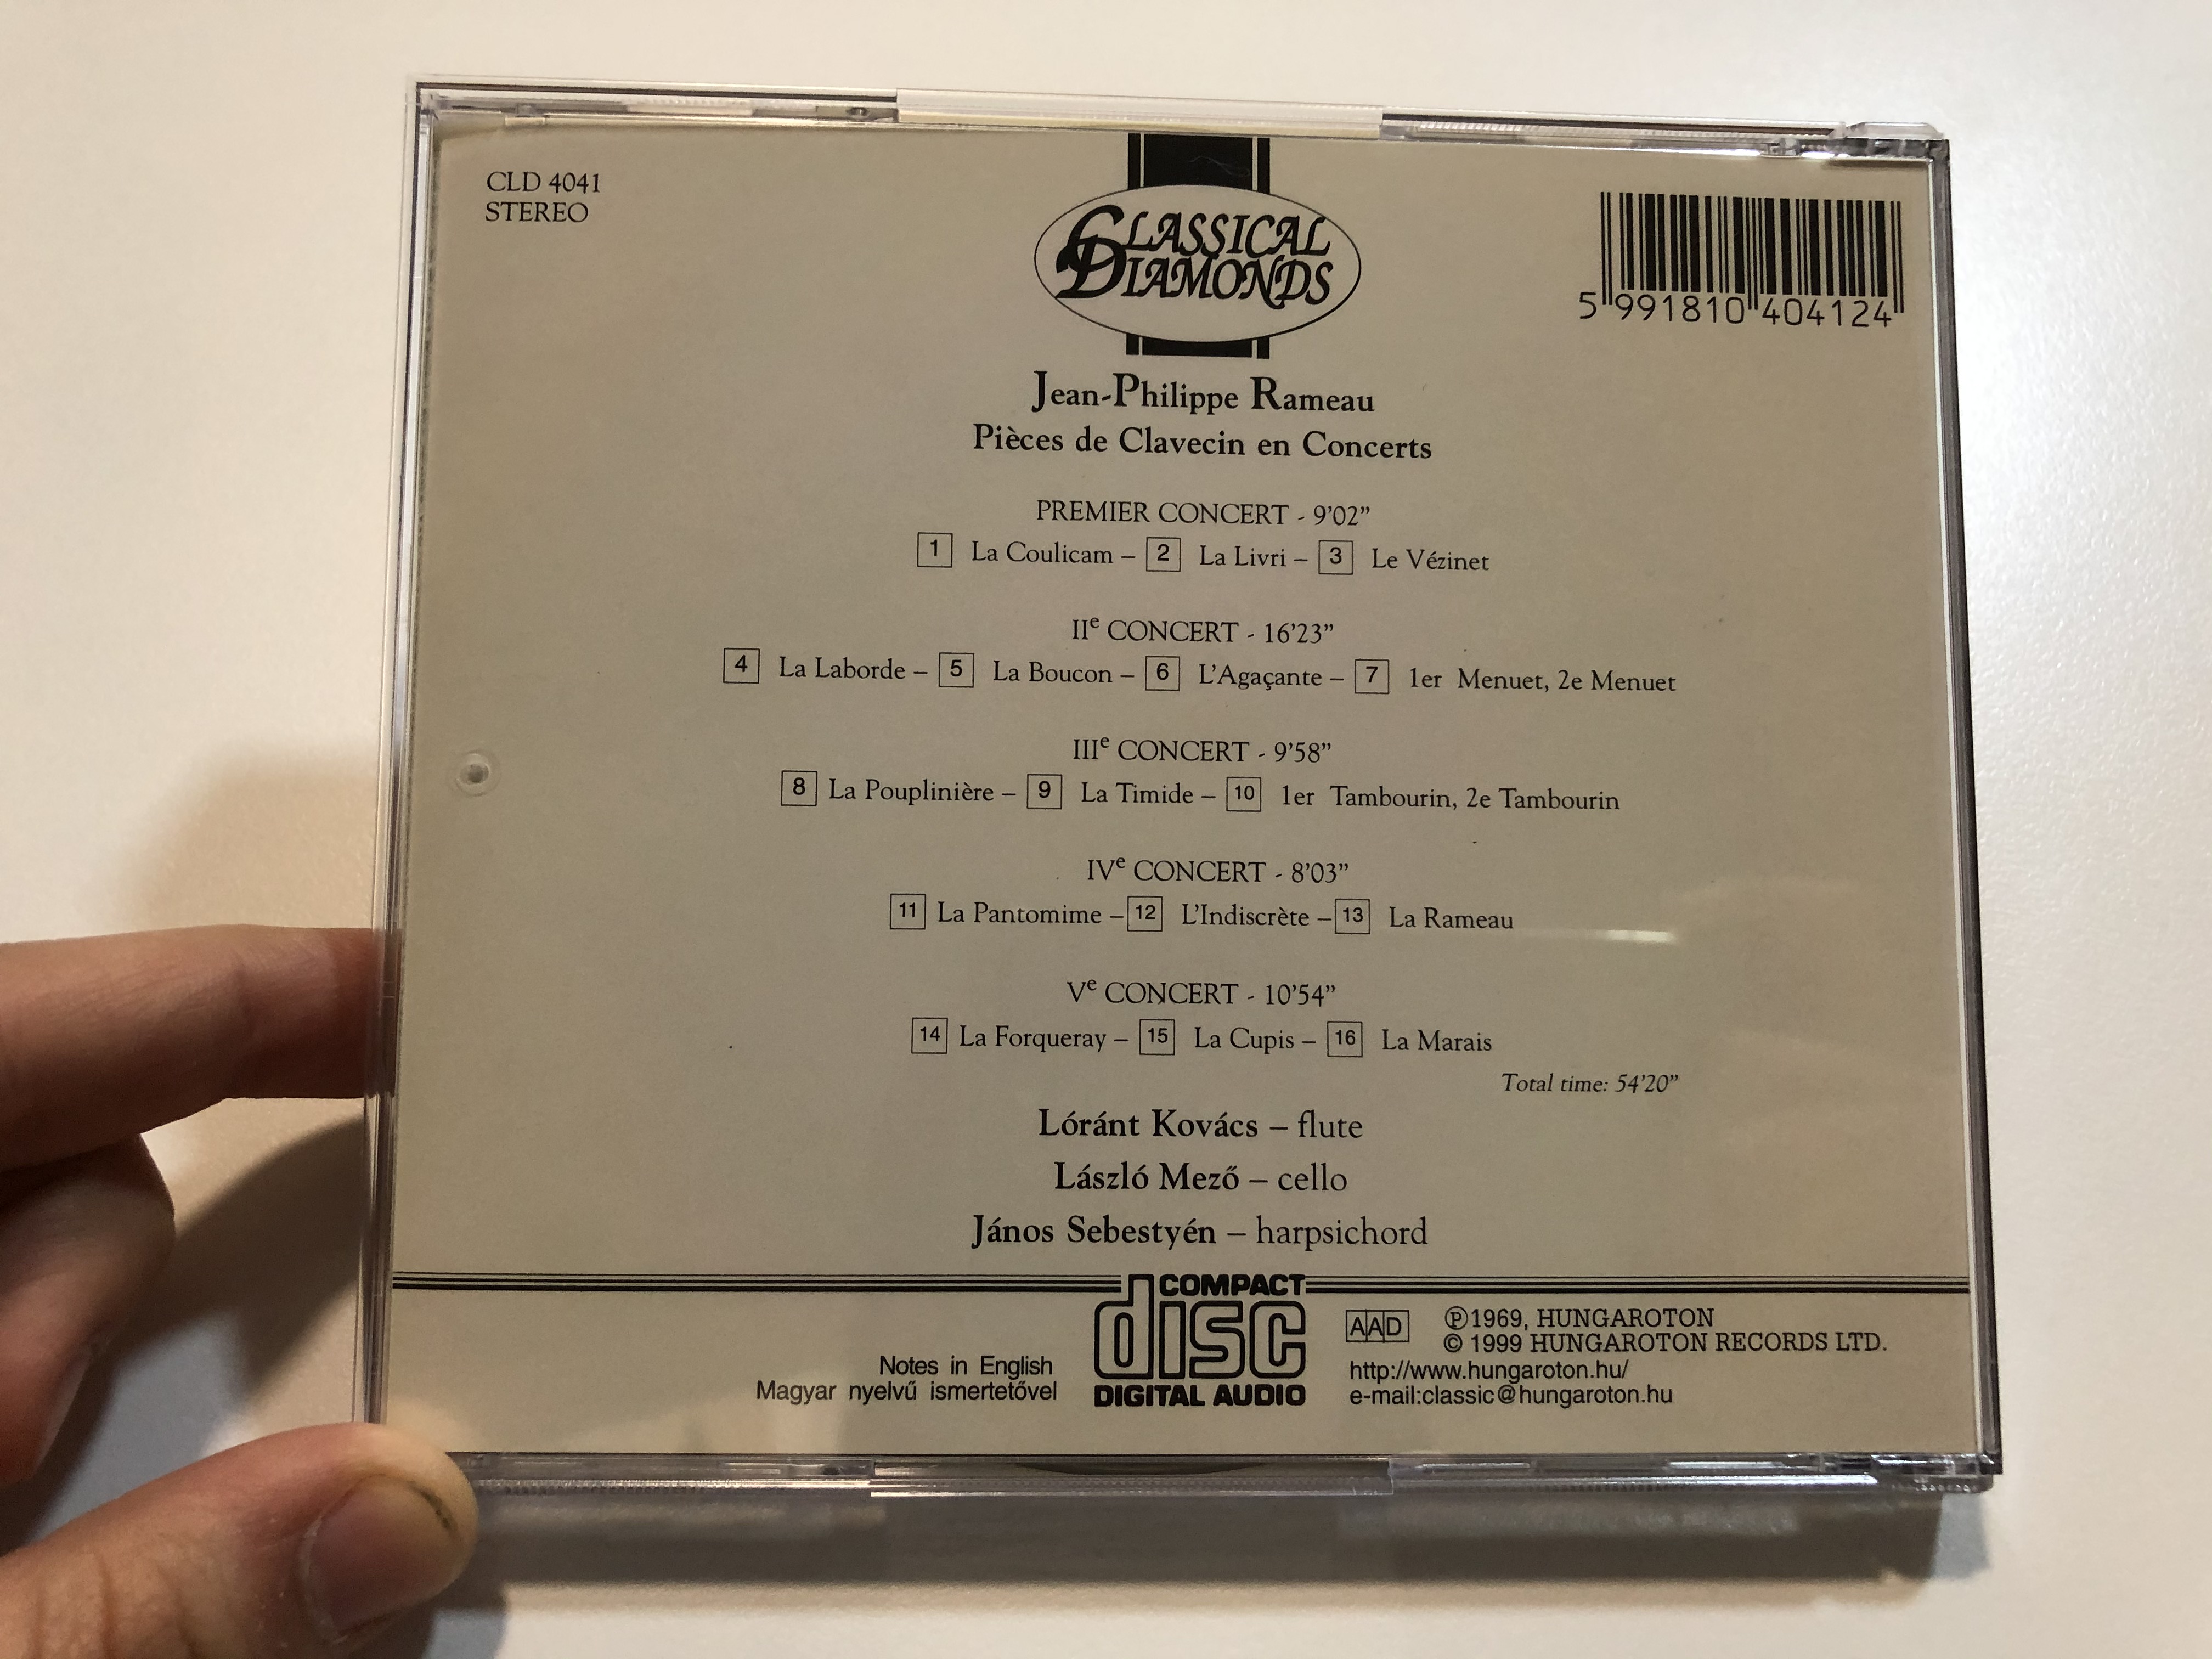 jean-philippe-rameau-pieces-de-clavecin-en-concerts-l-r-nt-kov-cs-flute-l-szl-mez-violoncello-j-nos-sebesty-n-harpsichord-hungaroton-classic-audio-cd-1999-stereo-cld-4041-1-6-.jpg